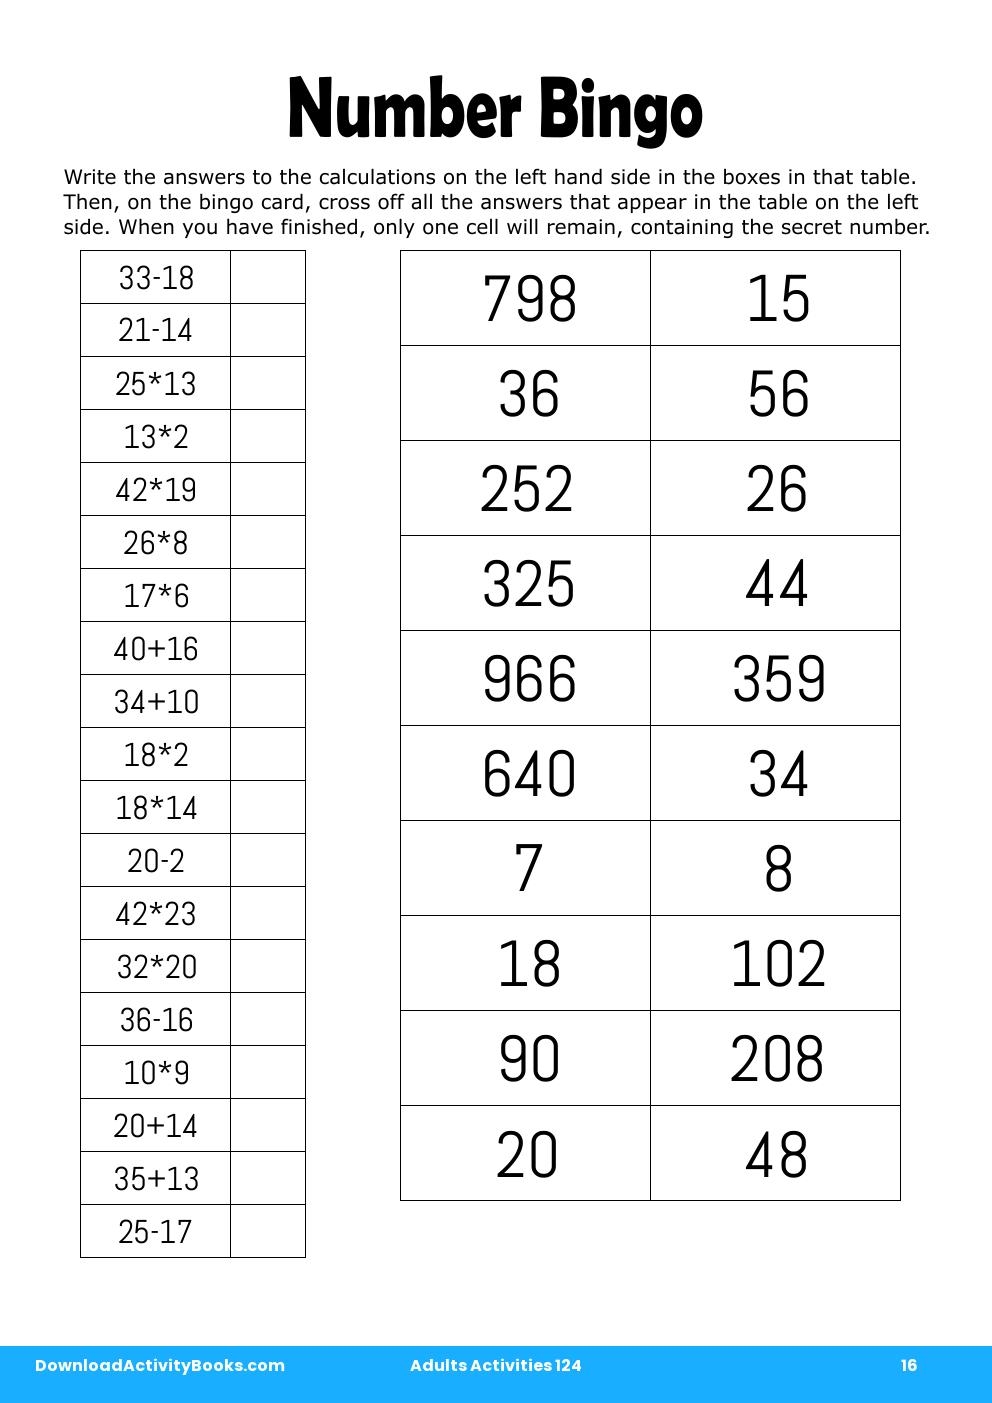 Number Bingo in Adults Activities 124